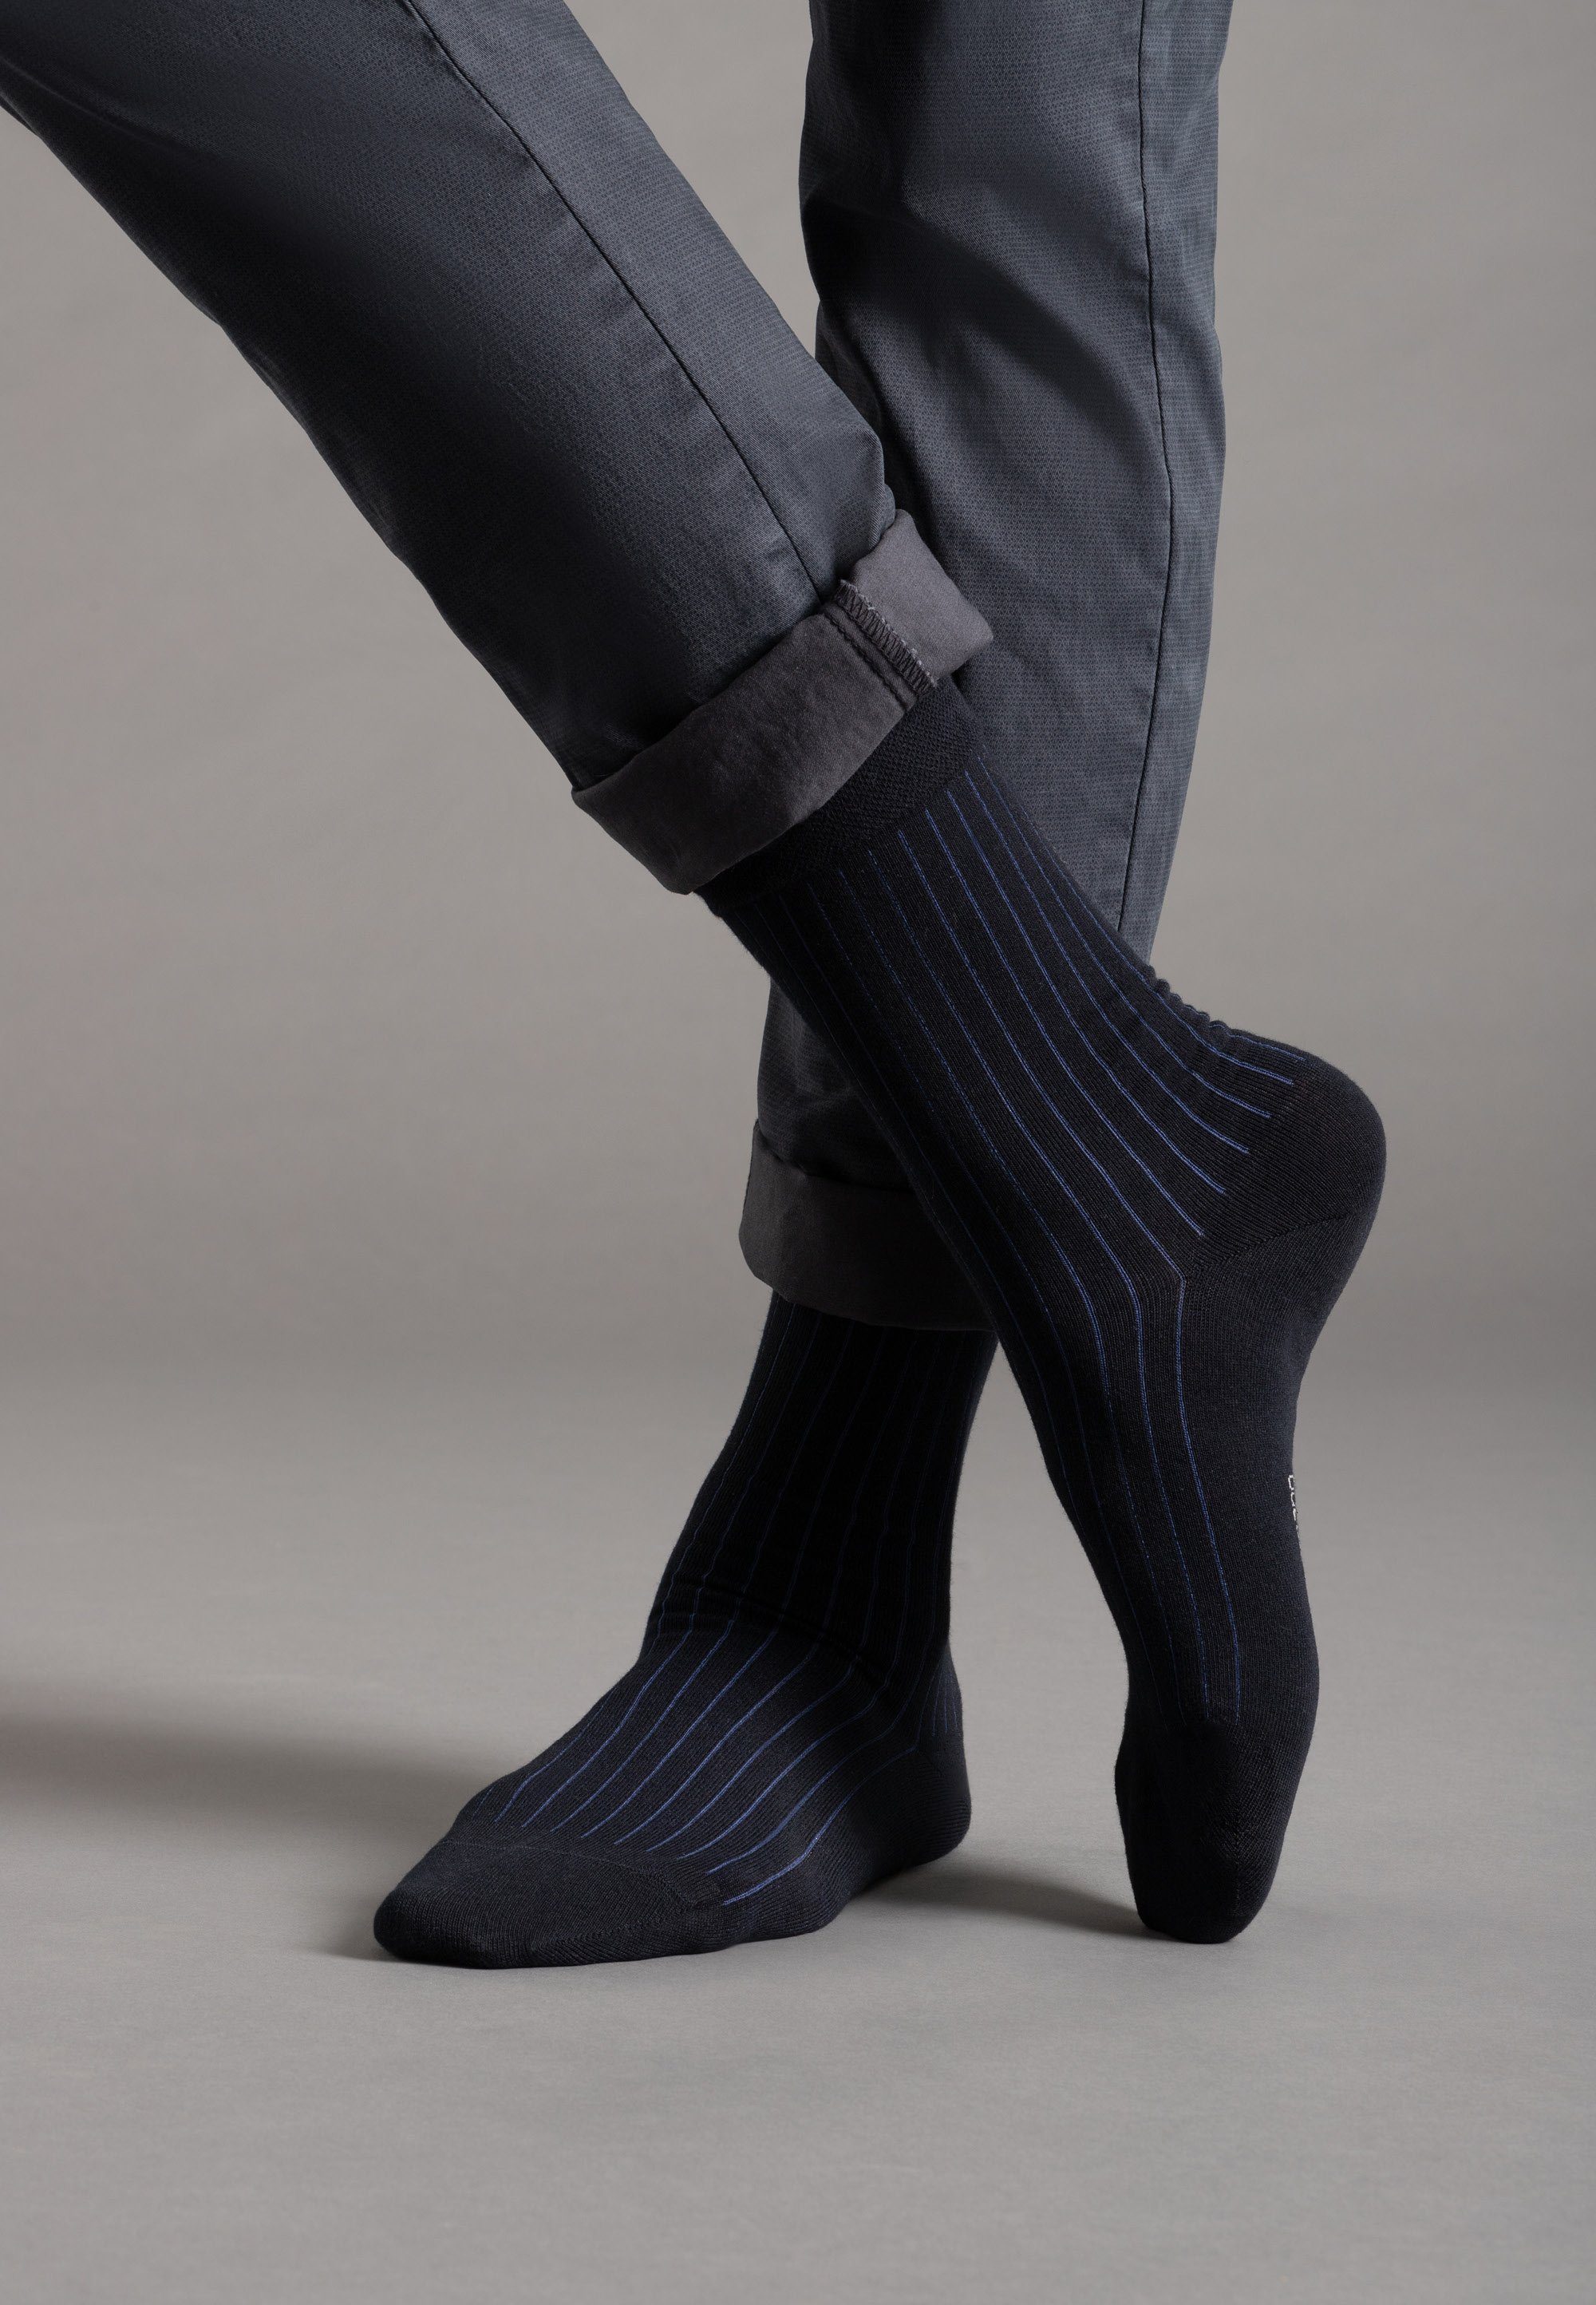 Camano Socken mit weichem Komfortbund dunkelblau blau, (7-Paar) ca-soft